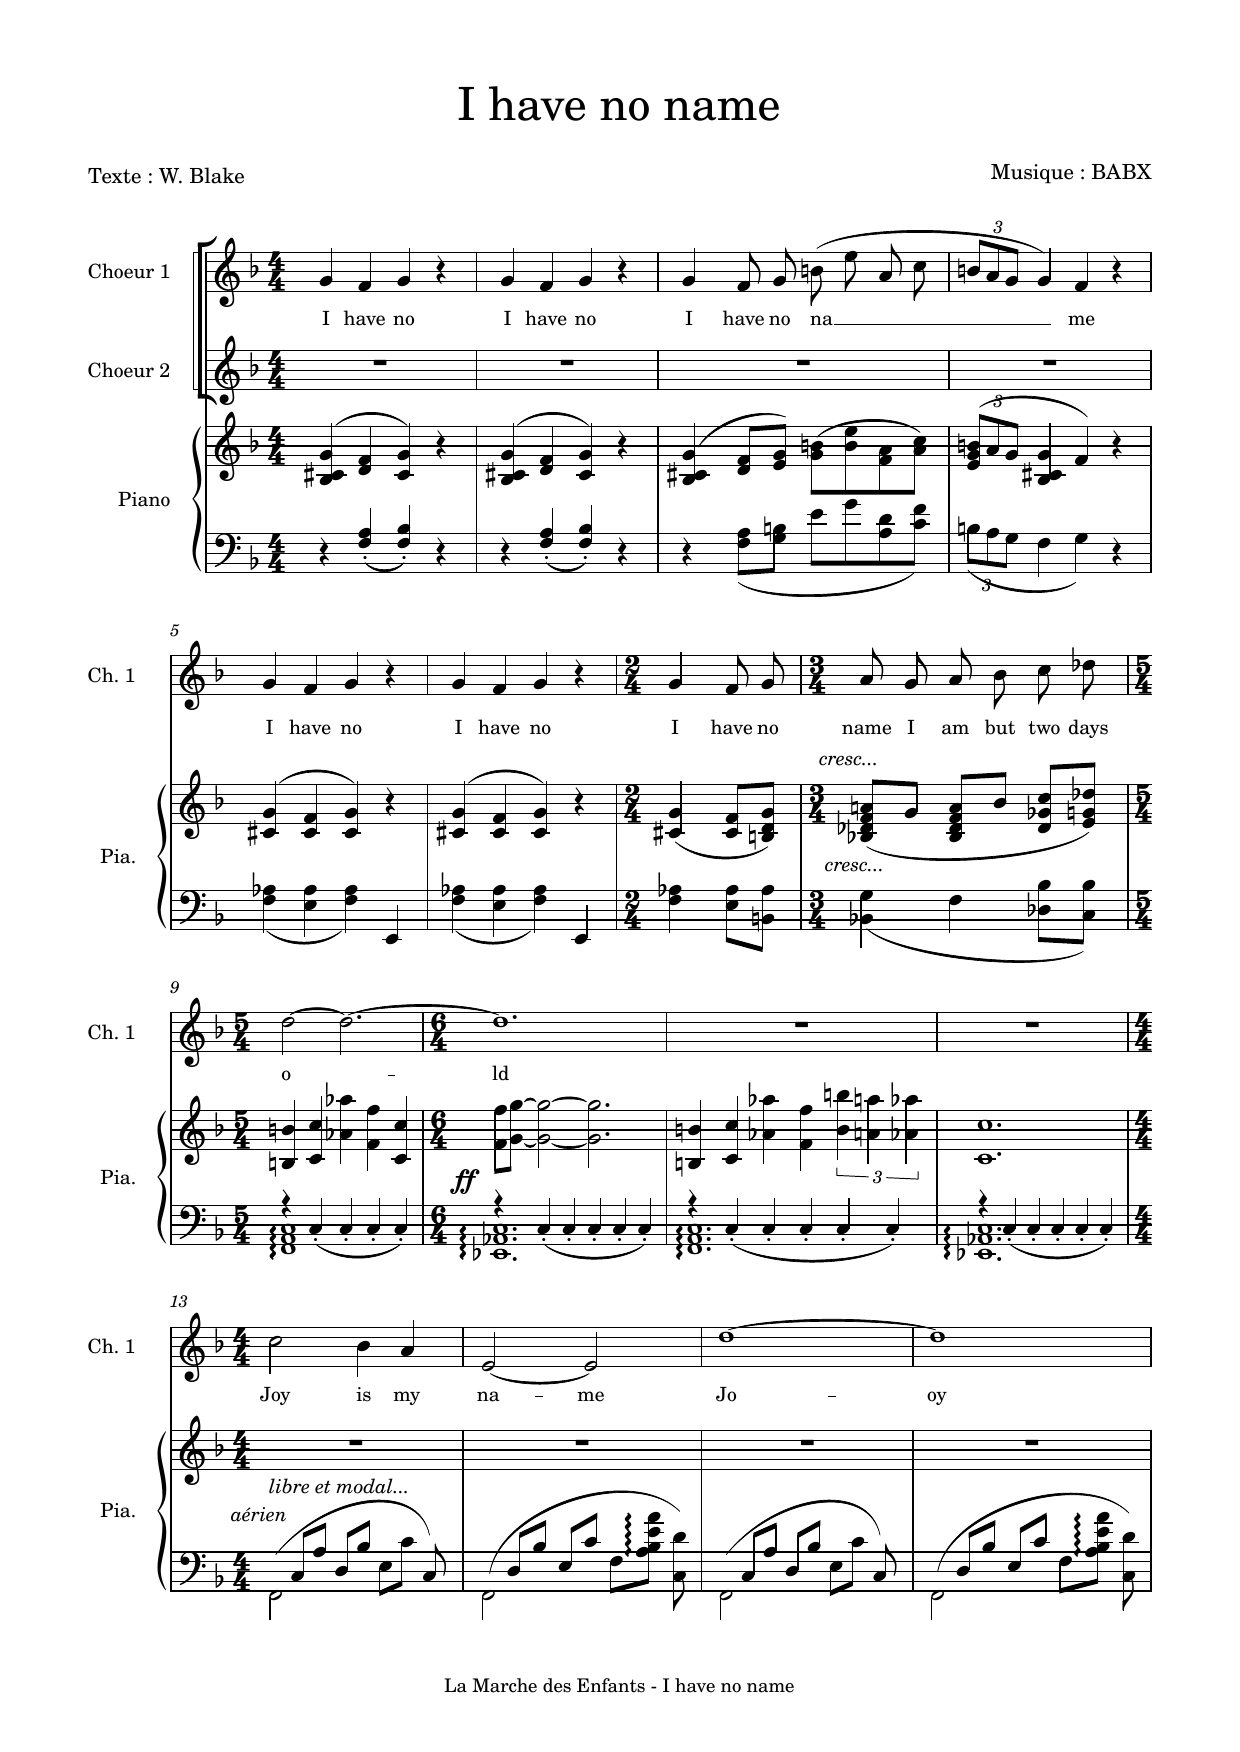 David Babin (Babx) I have no name sheet music notes printable PDF score